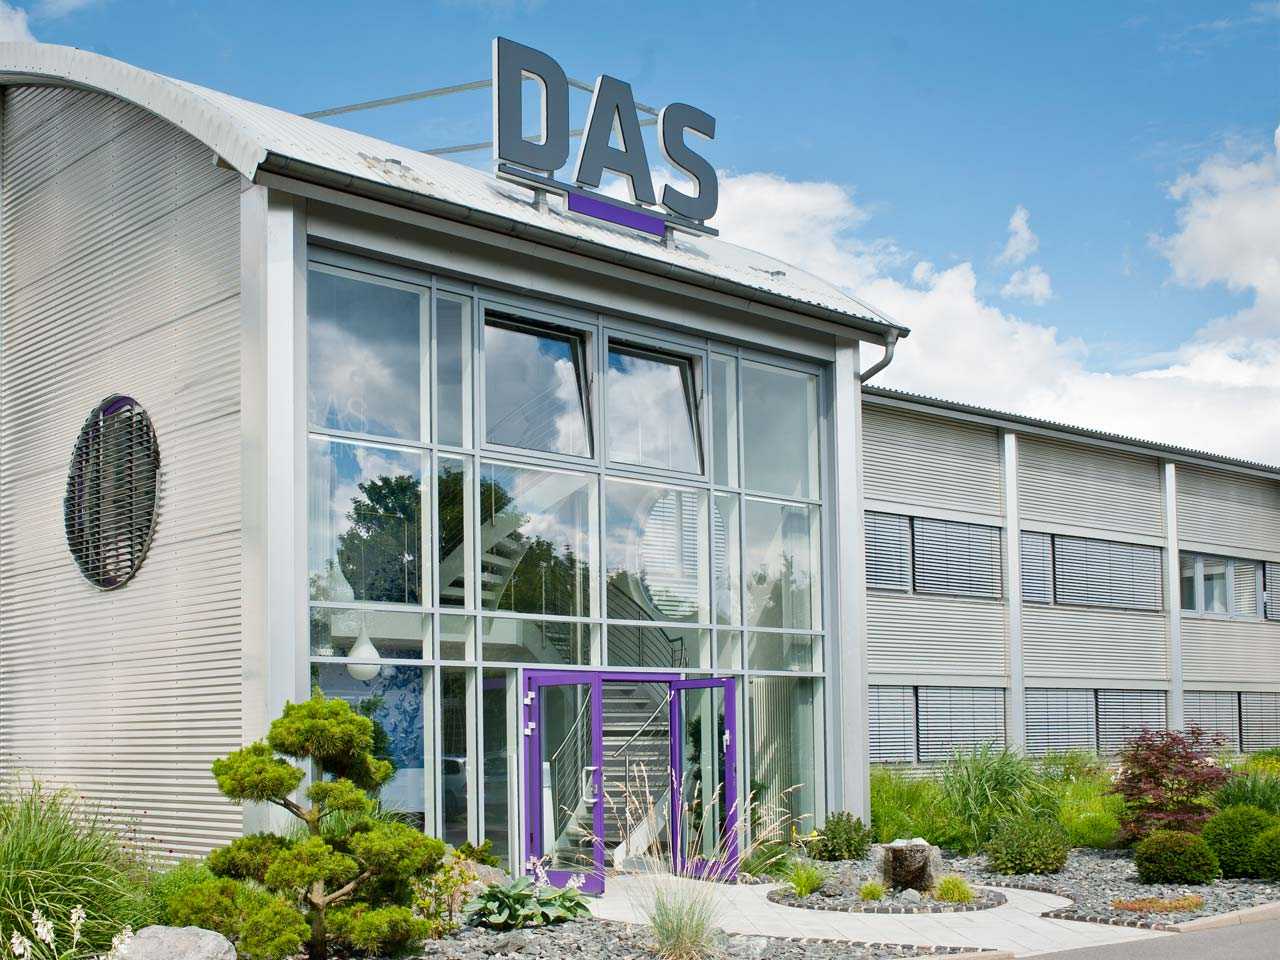 DAS Environmental Expert GmbH